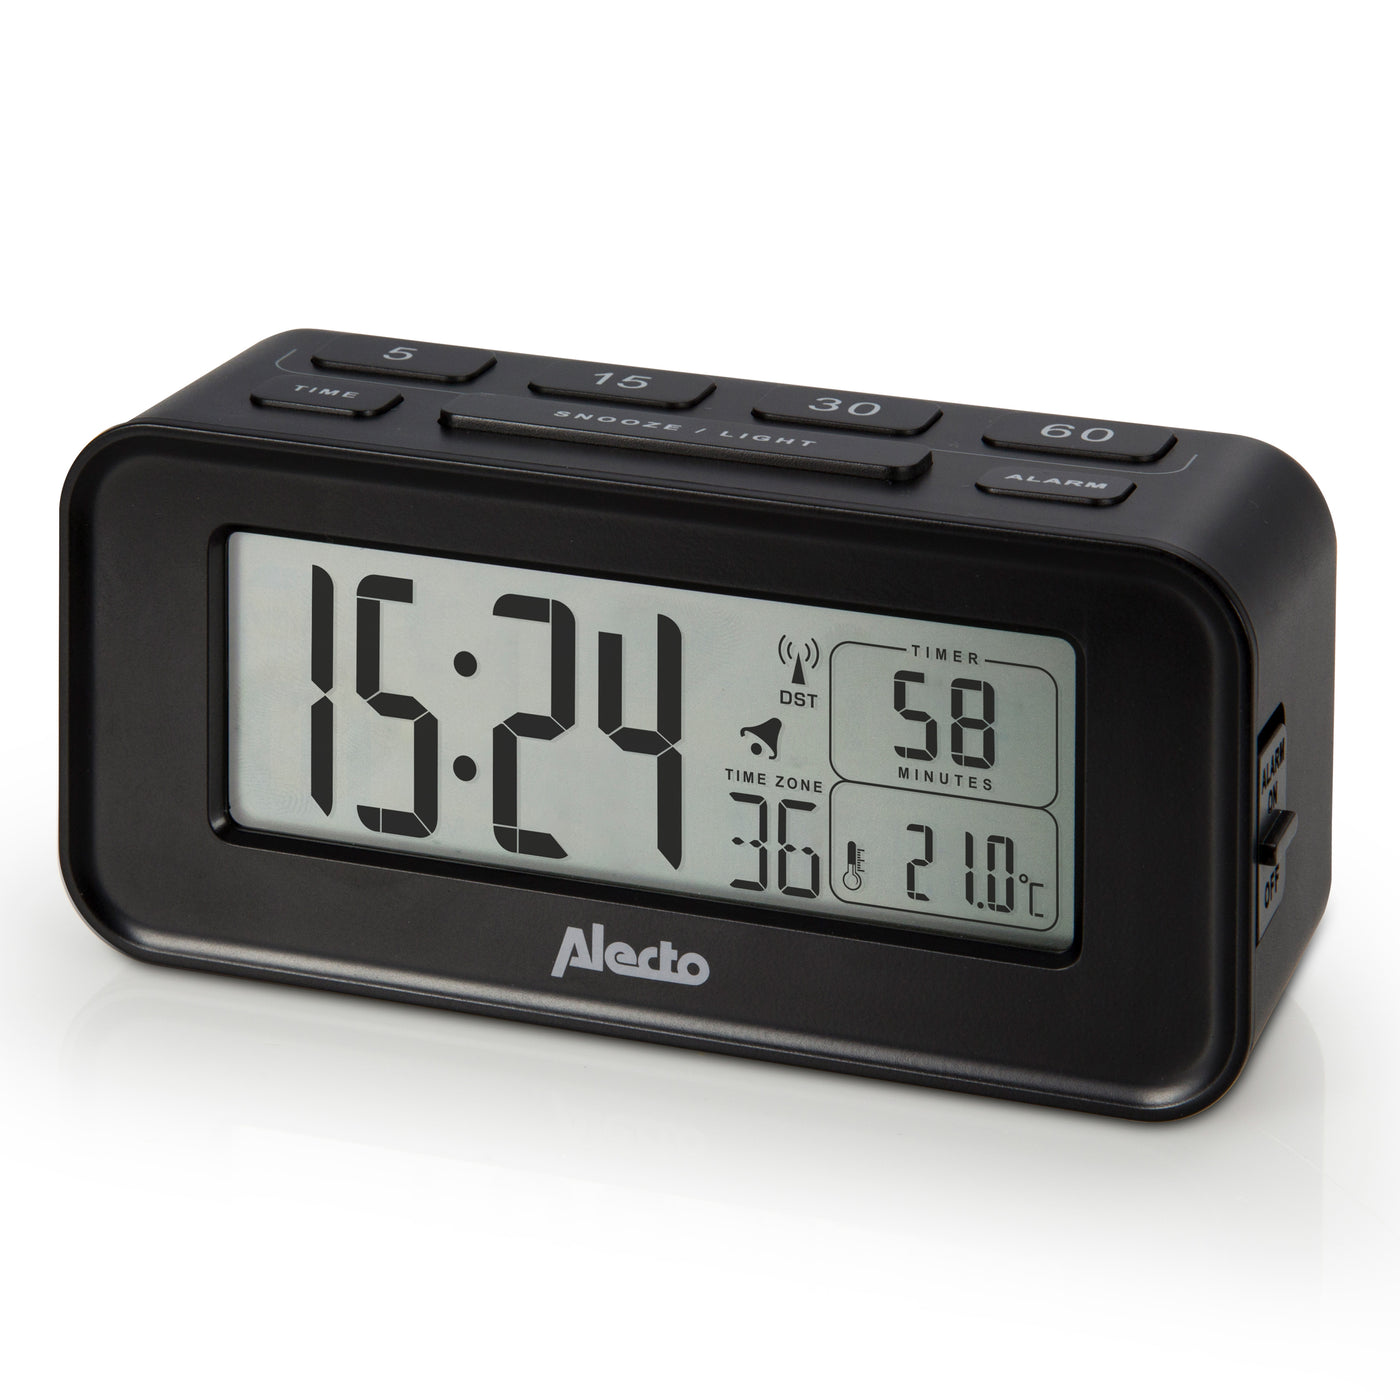 Alecto AK-40 - Digital alarm clock, preset timer, temperature